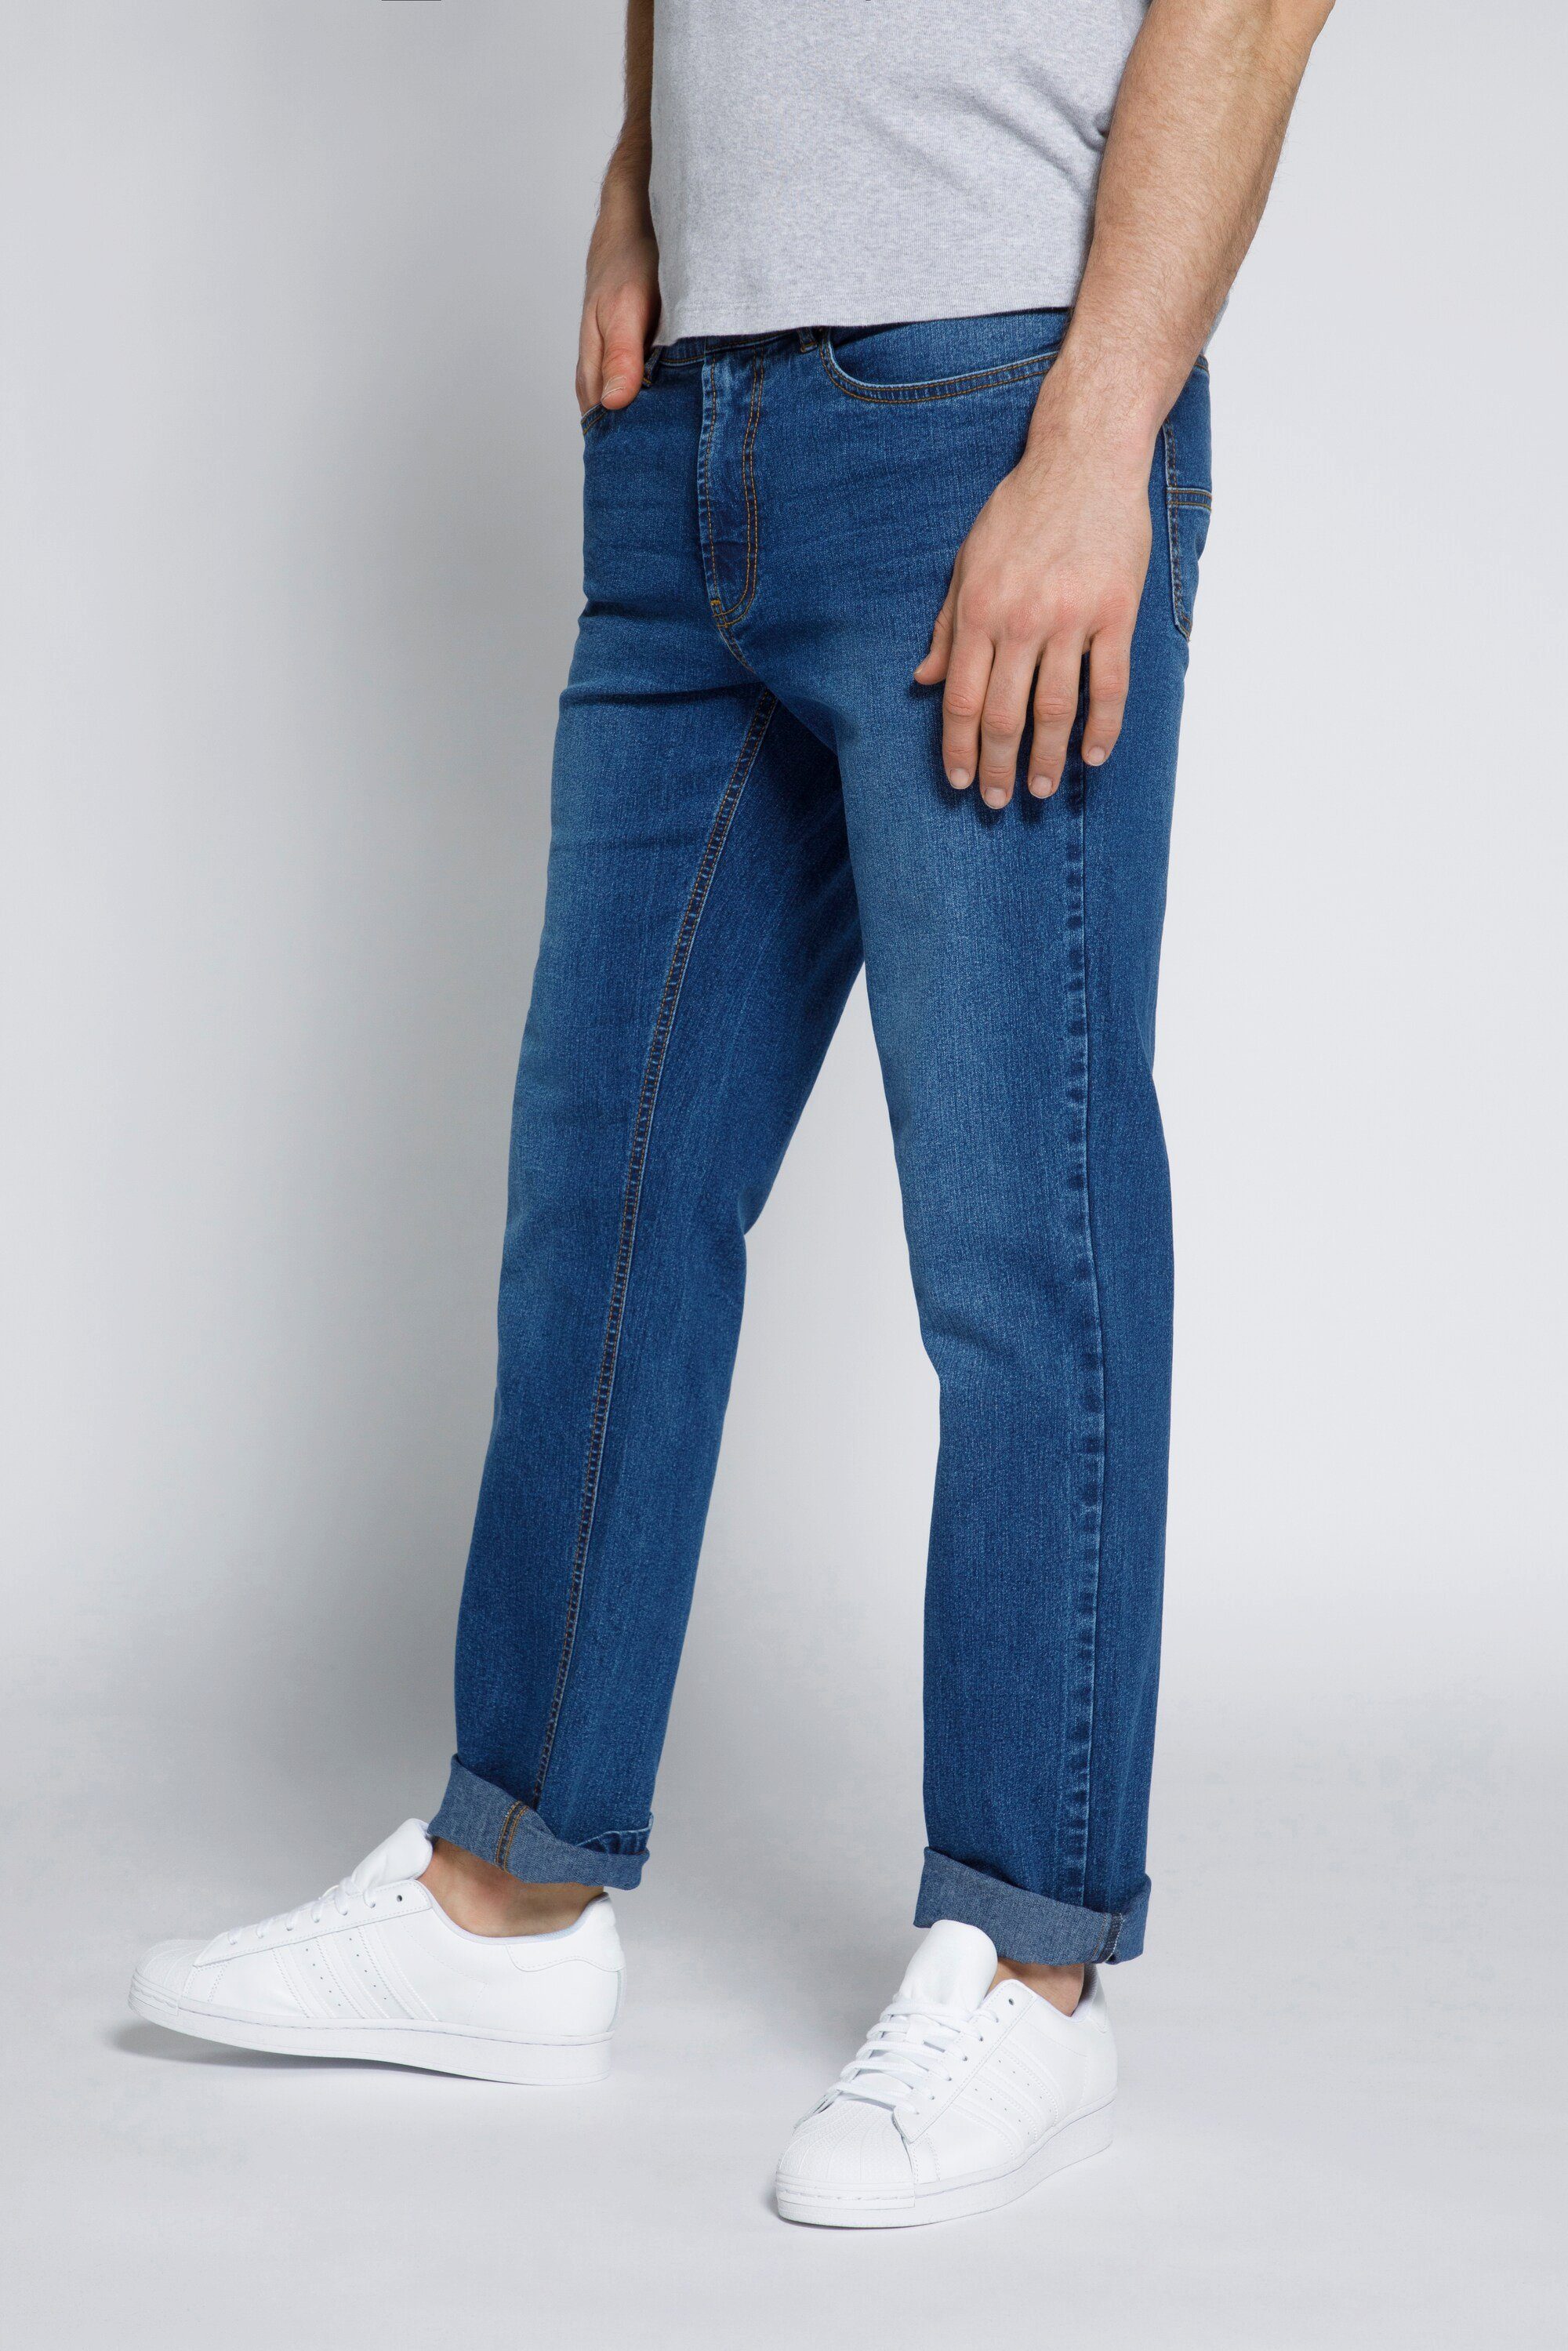 STHUGE 5 5-Pocket-Jeans blue Fit Regular Bauch STHUGE Pocket Fit denim Jeans